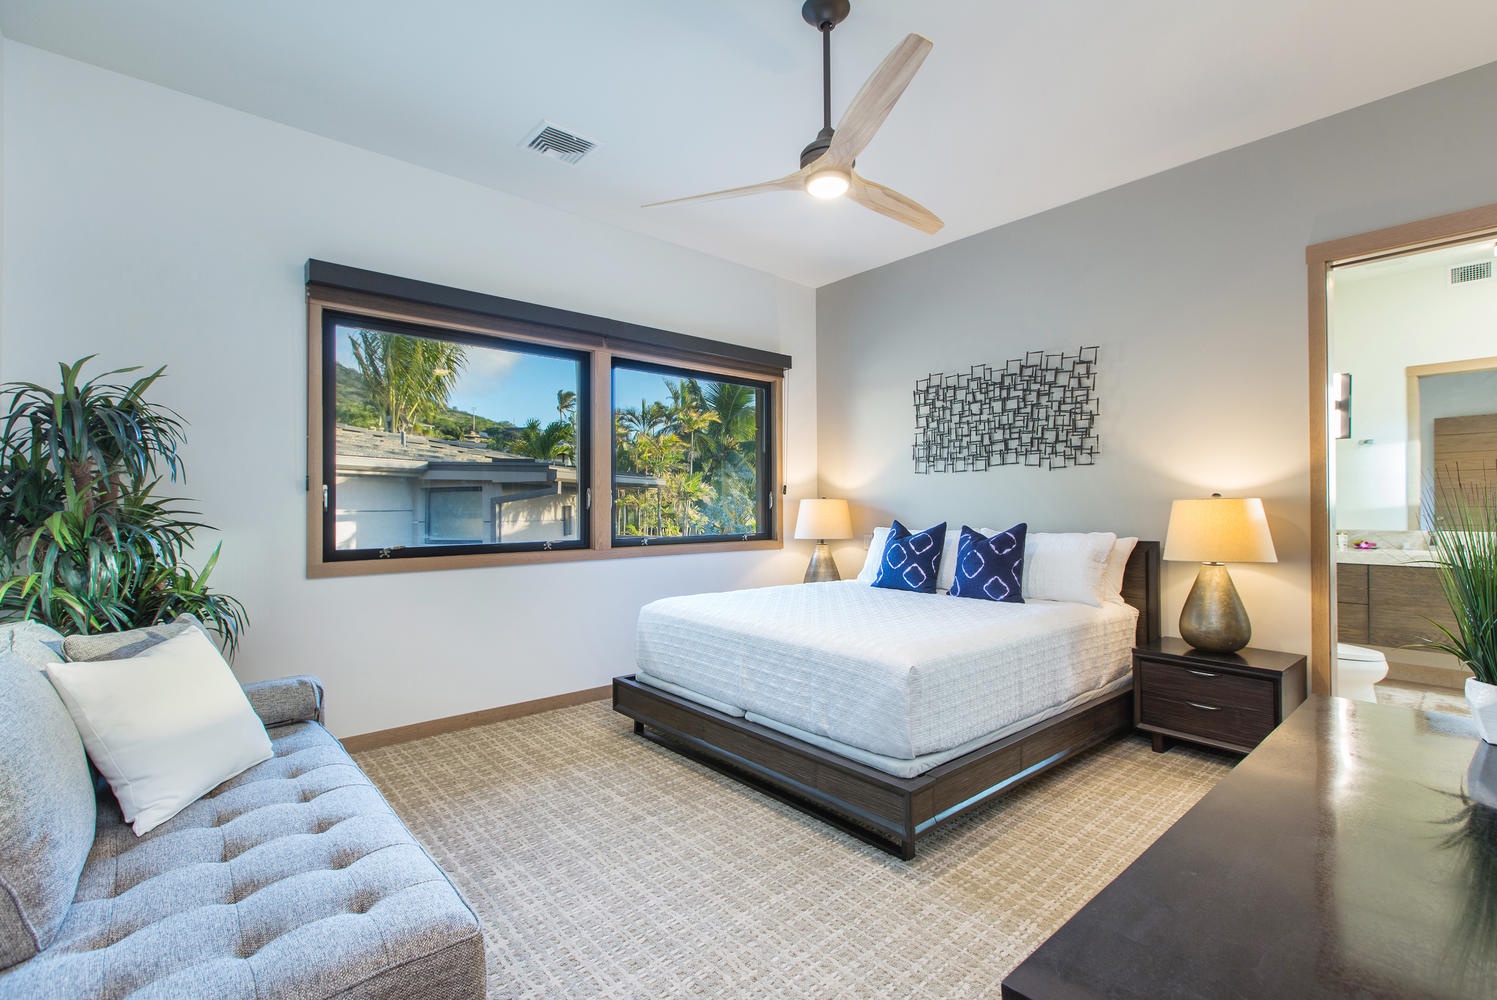 Honolulu Vacation Rentals, Ocean House 4 Bedroom - Upstairs bedroom suite